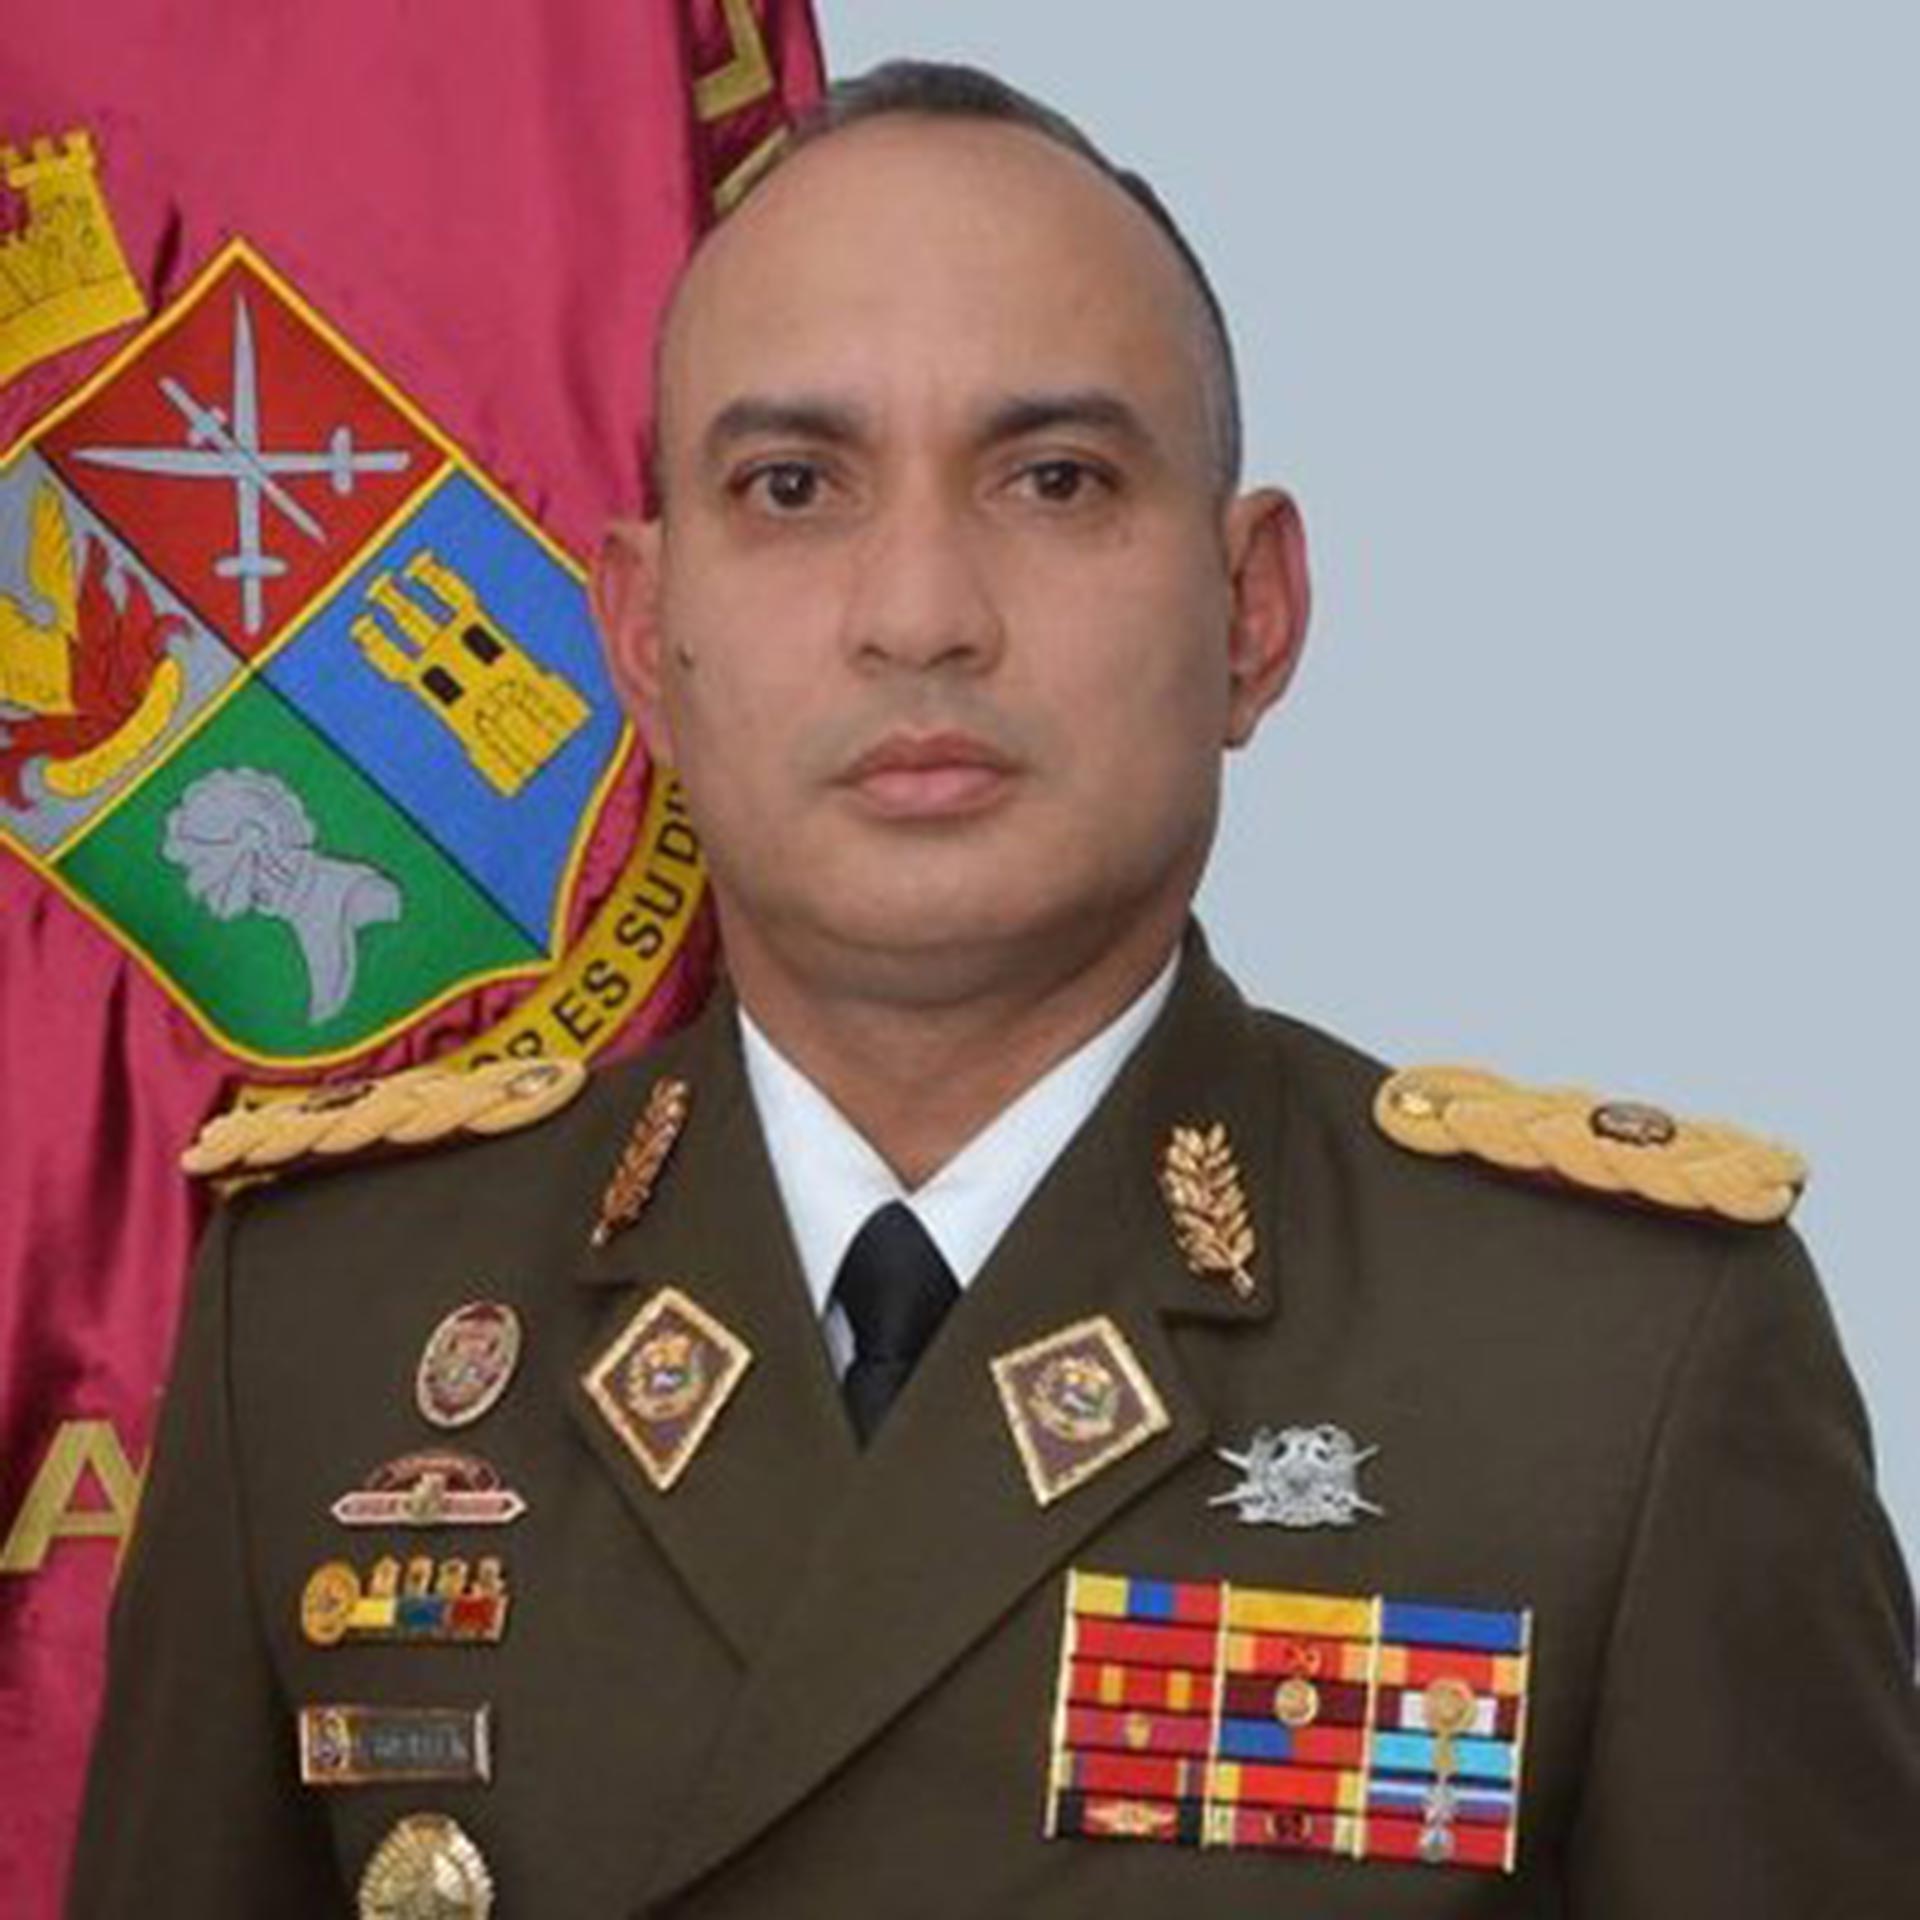 GB Luis Adolfo Rosales Molina, jefe del Comando de Zona GNB en Táchira